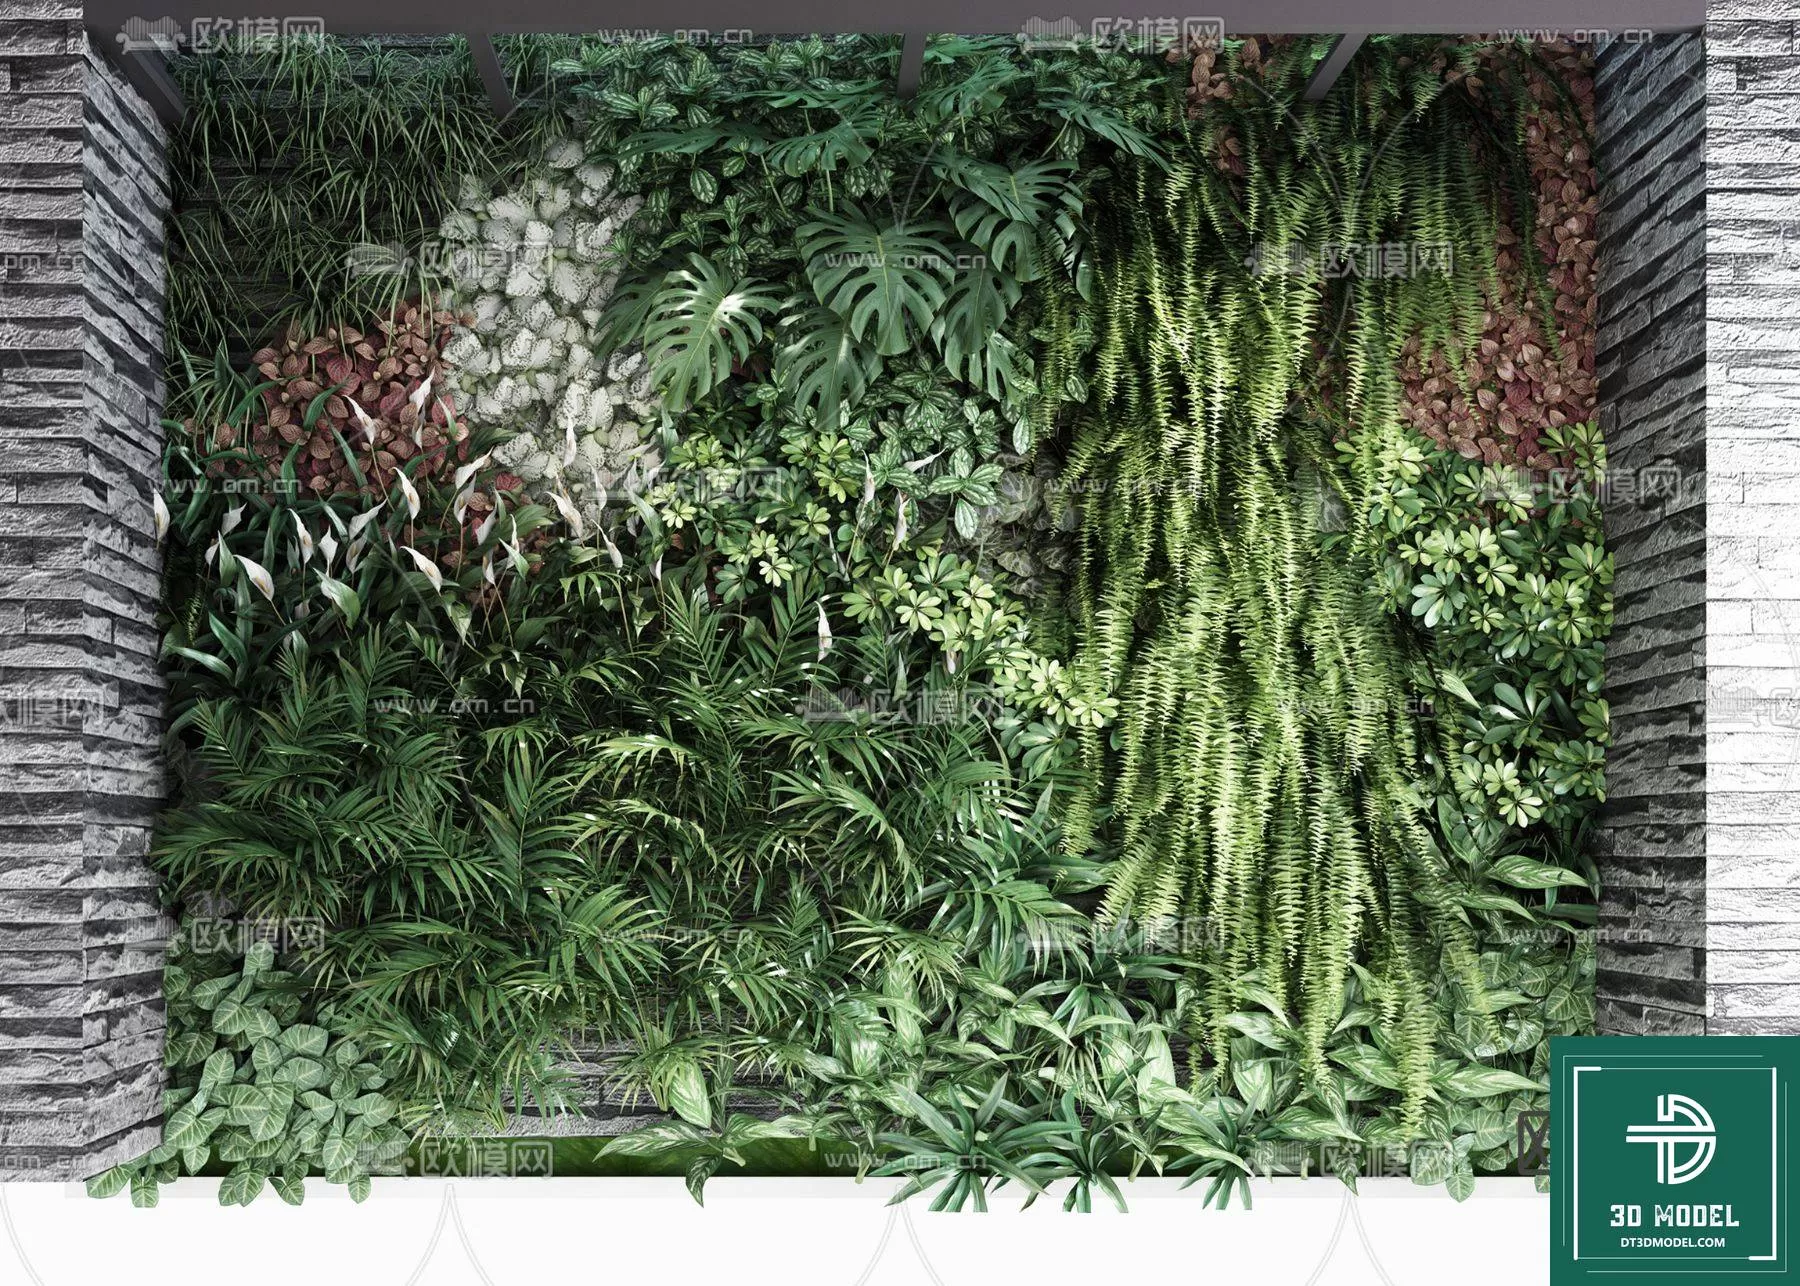 VERTICAL GARDEN – FITOWALL PLANT 3D MODEL – 058